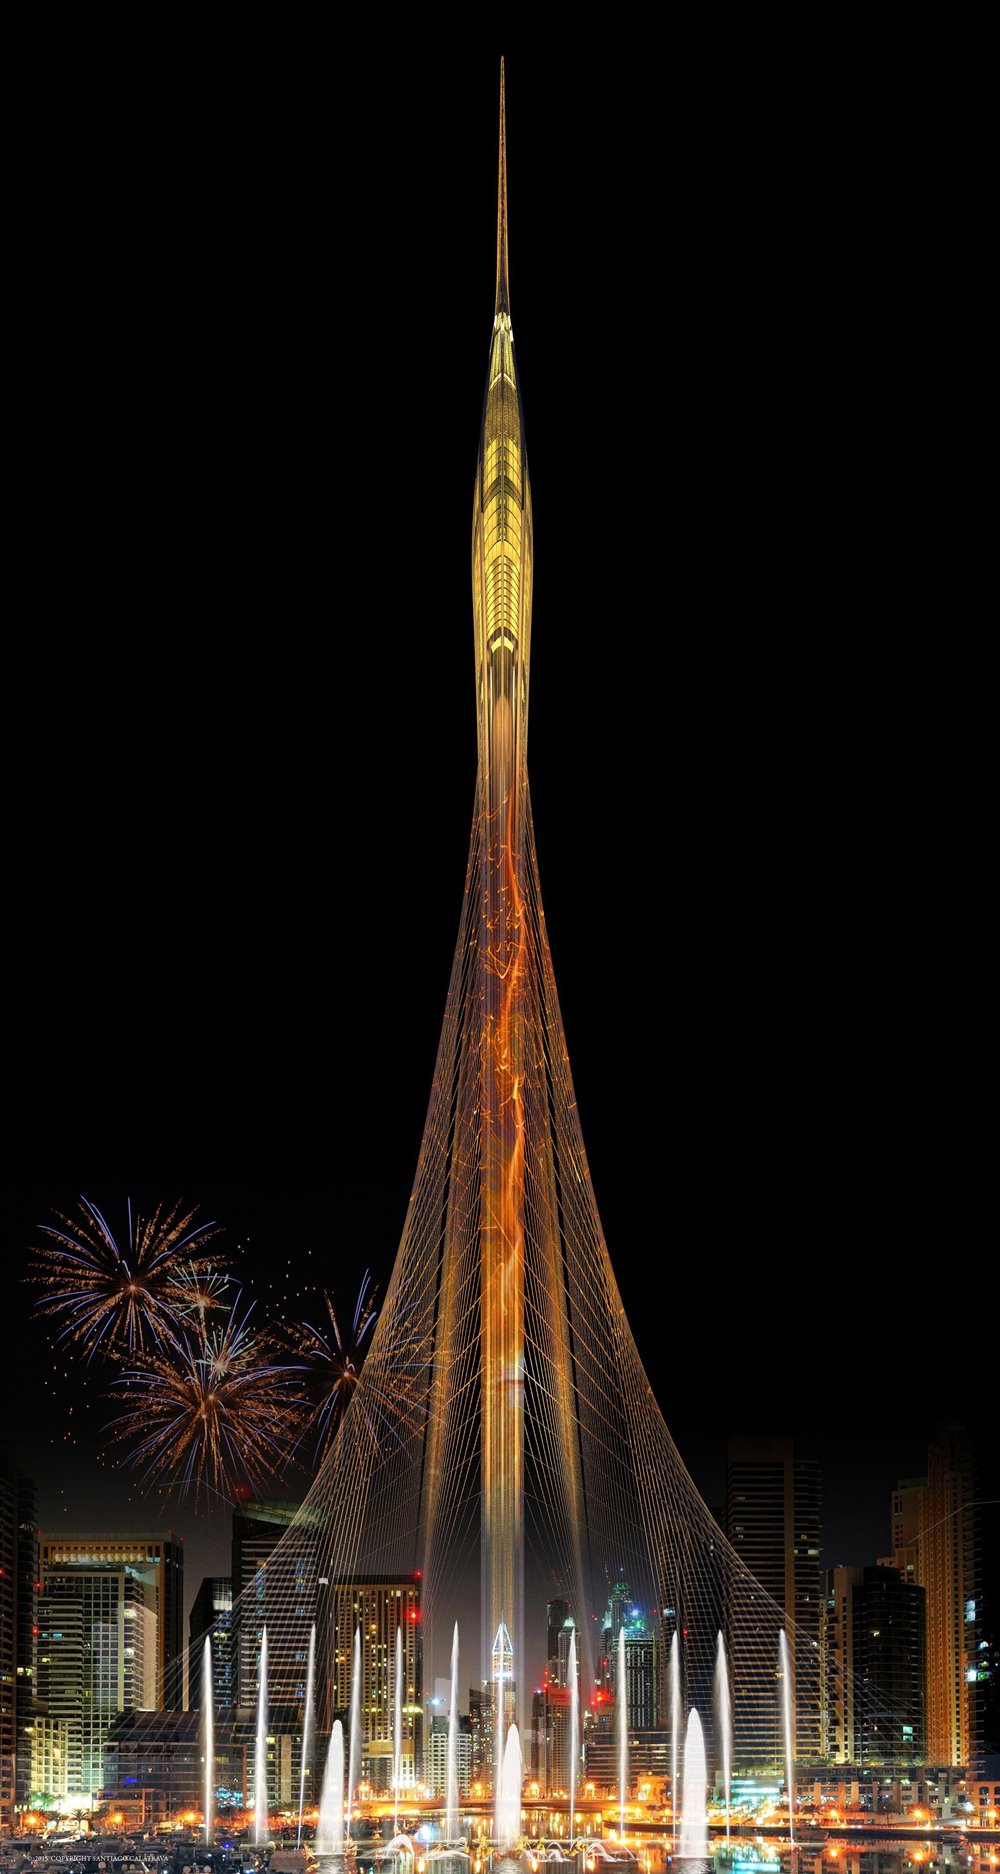 Dubai Creek Tower - найвища вежа у світі